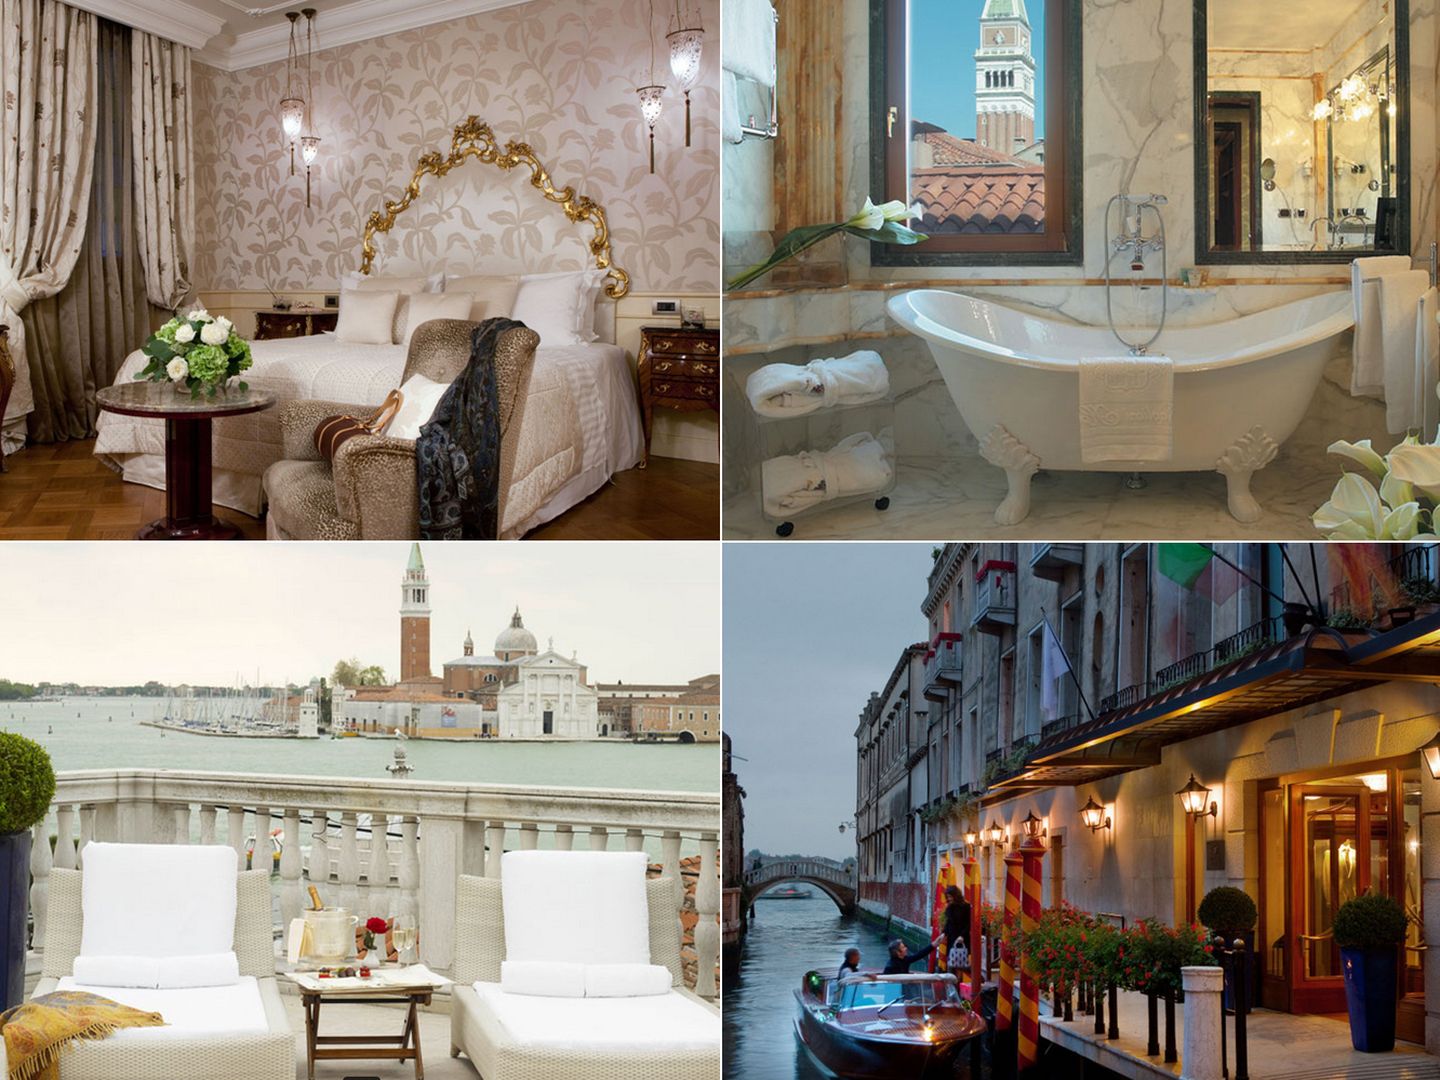 Fotografías del hotel en el que se han alojado en Venecia